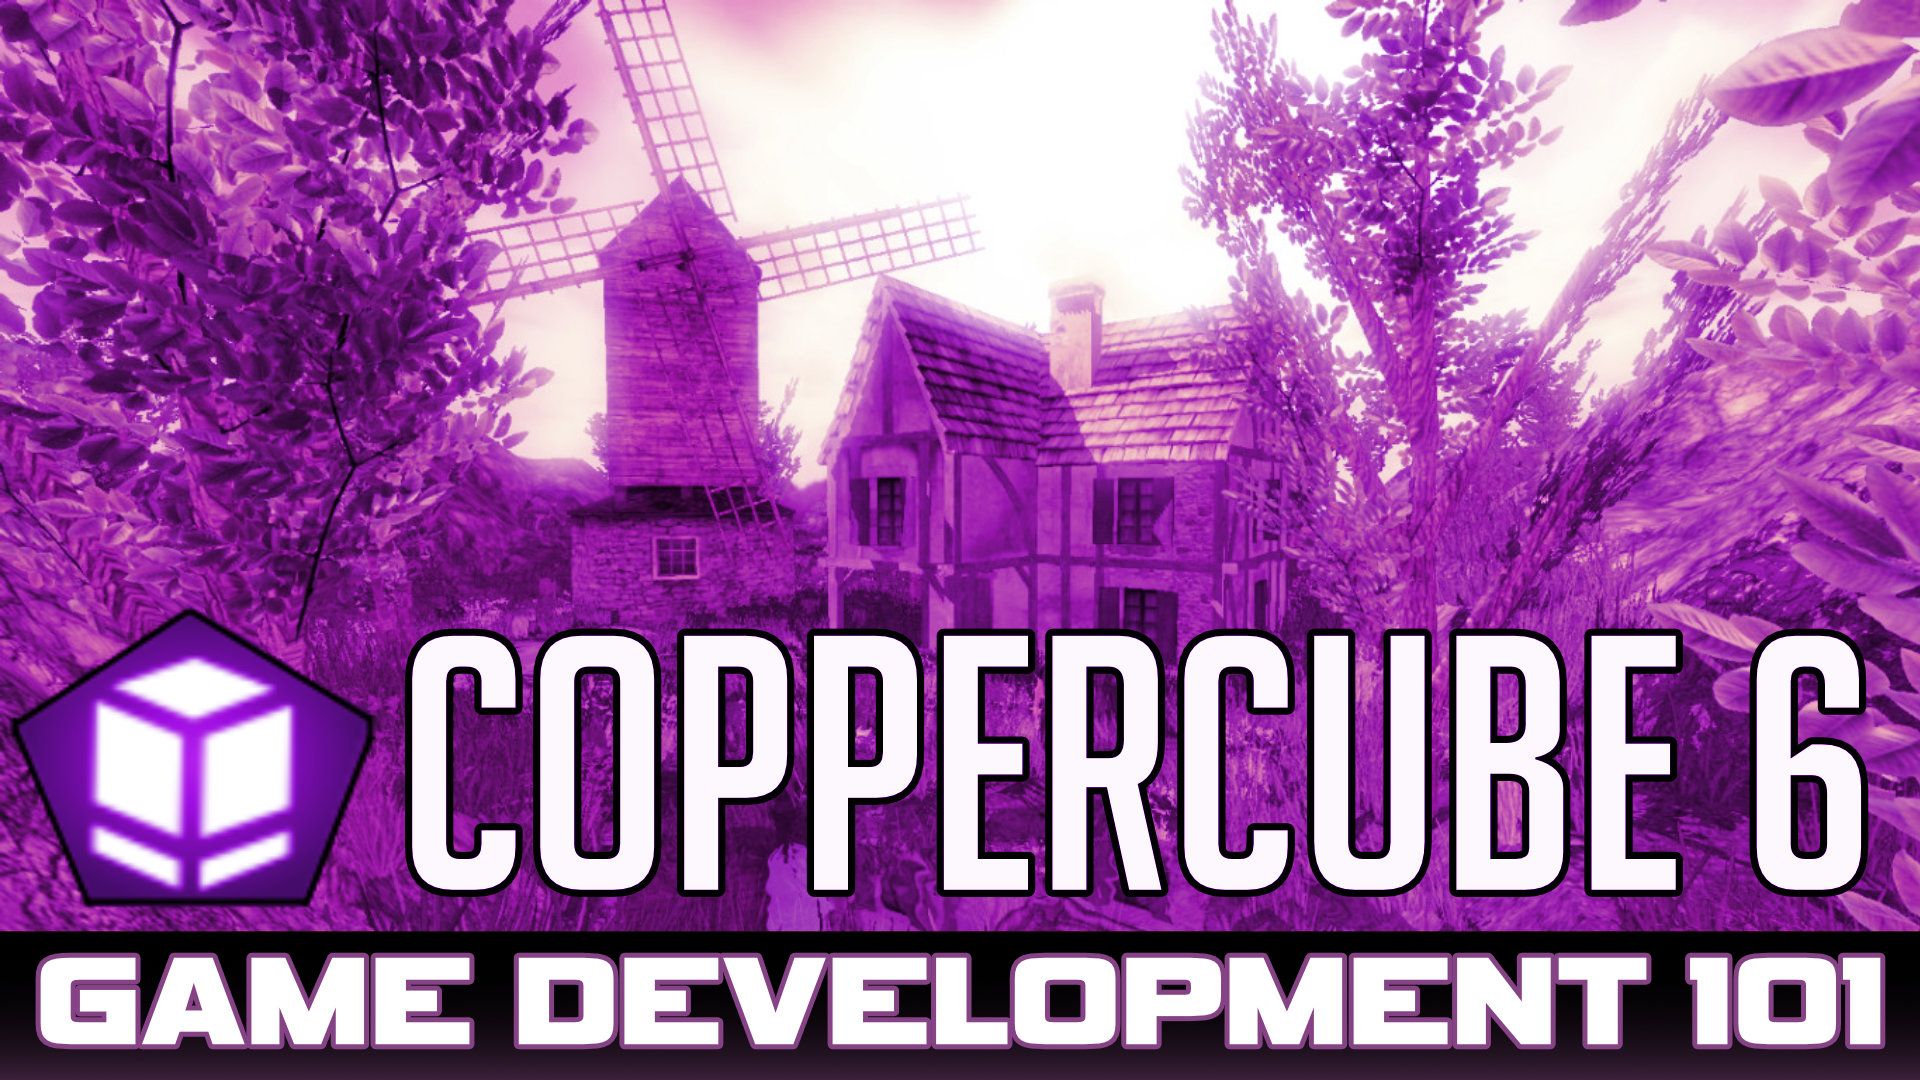 coppercube 6 tutorial